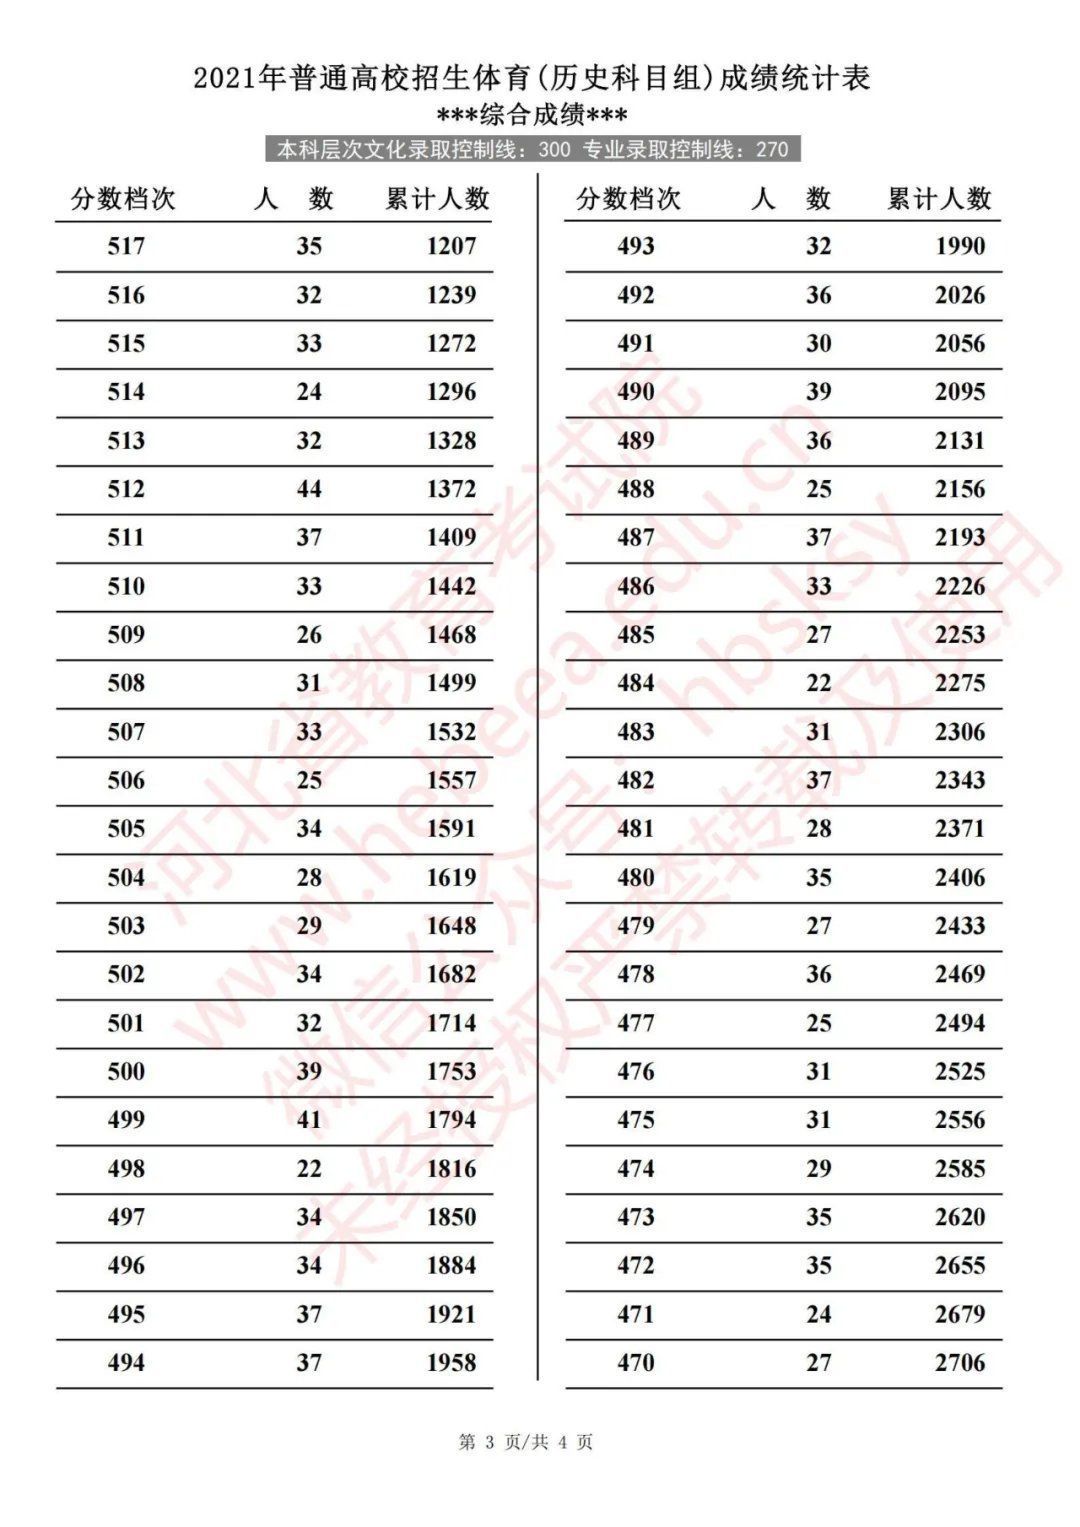 体育类|2021年河北省普通高校招生体育成绩统计表